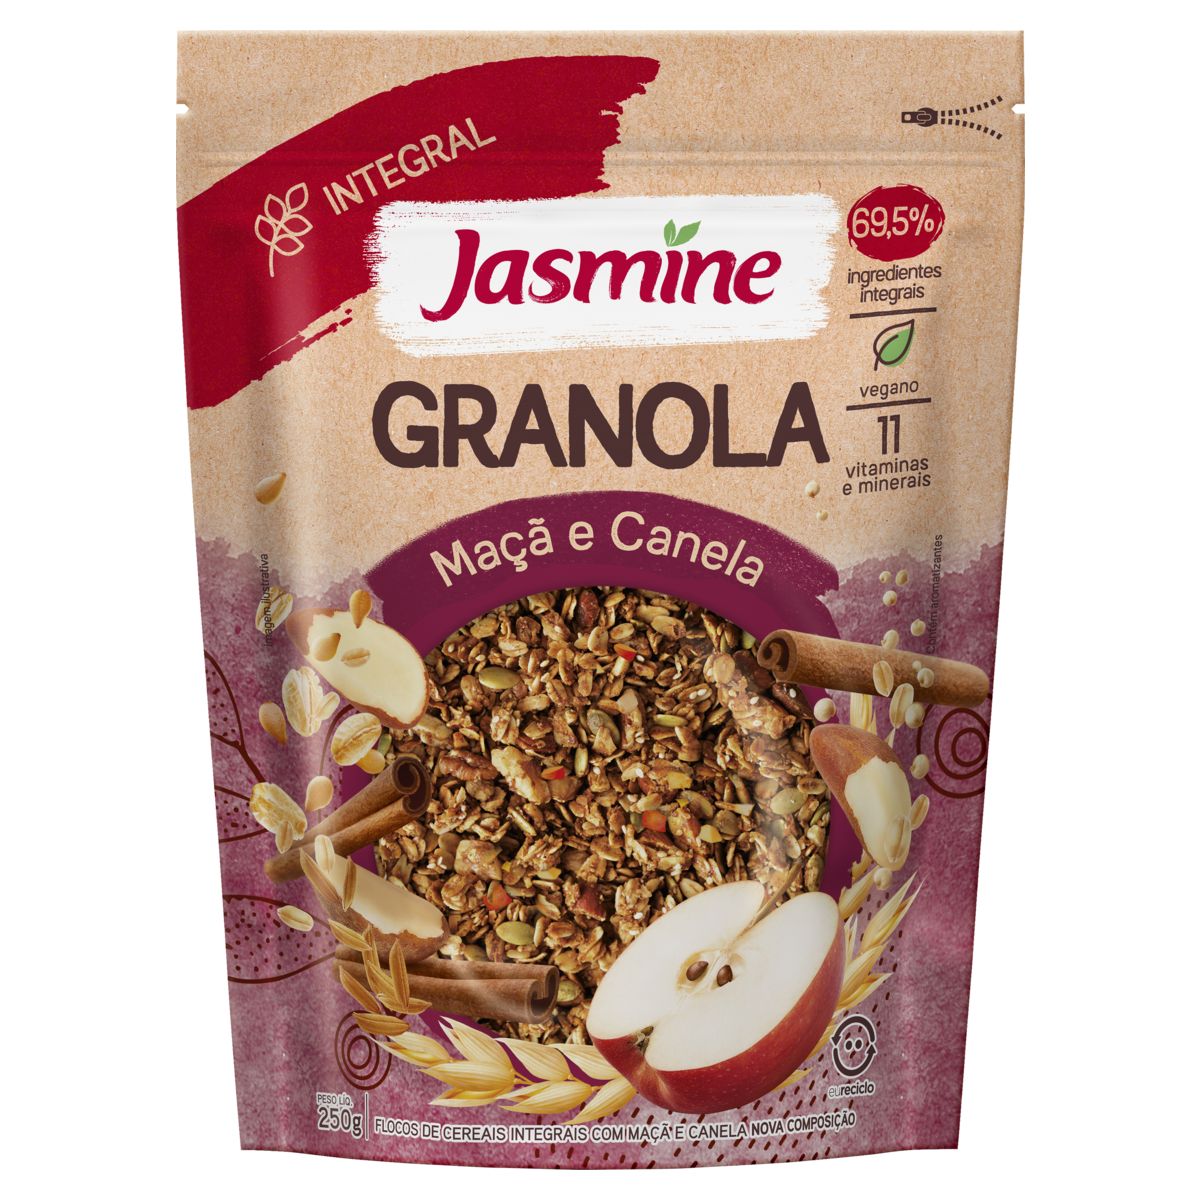 Granola Jasmine 69,5% Integral Maçã e Canela Pouch 250g